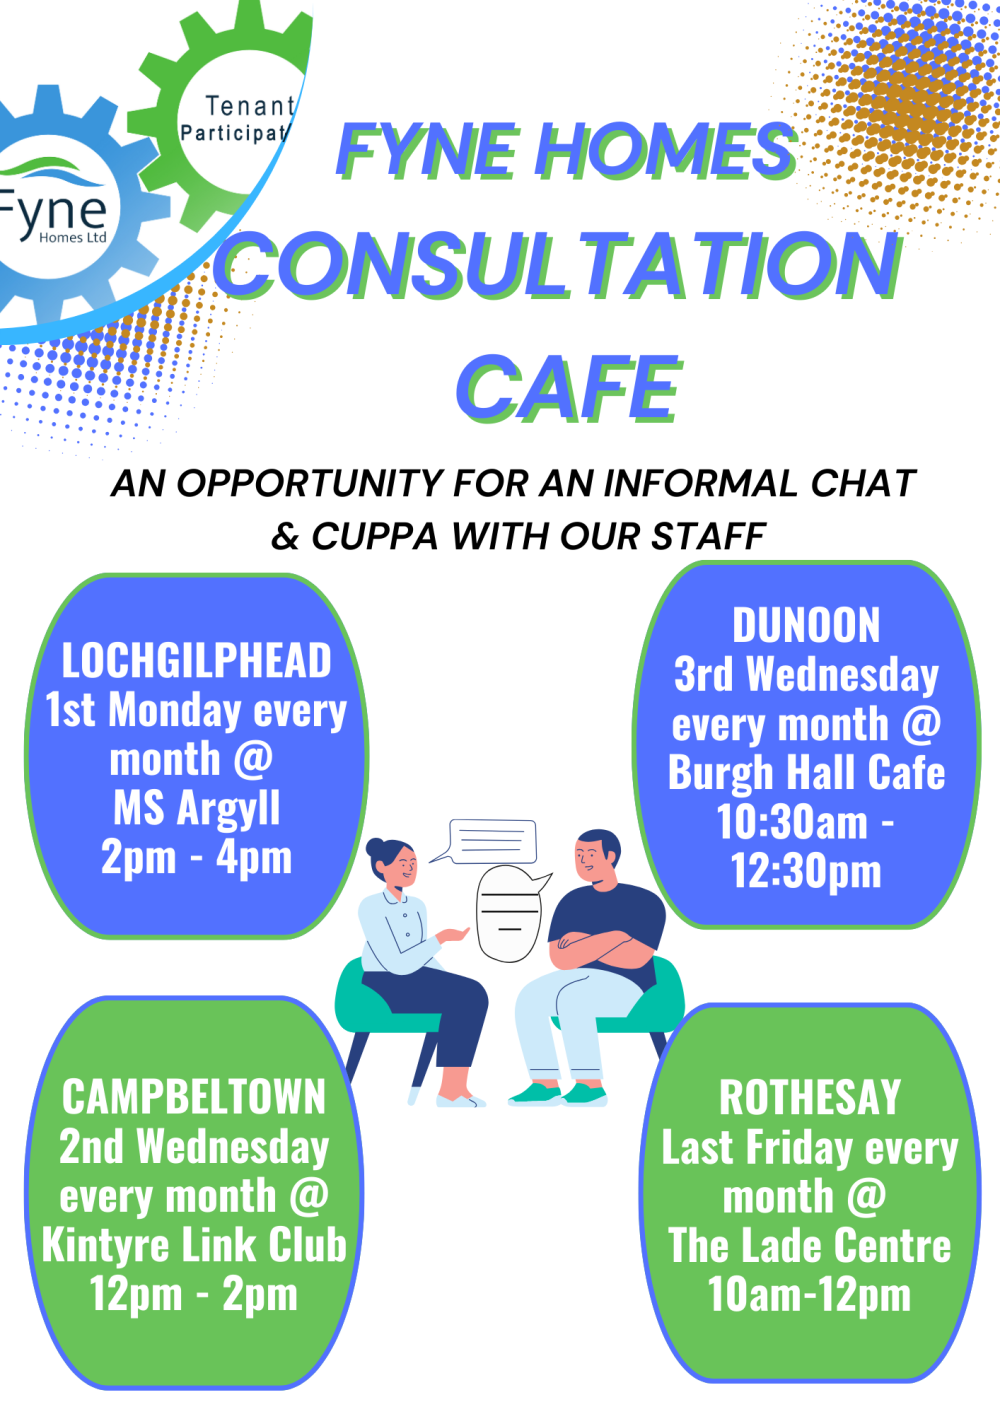 Consultation Cafe